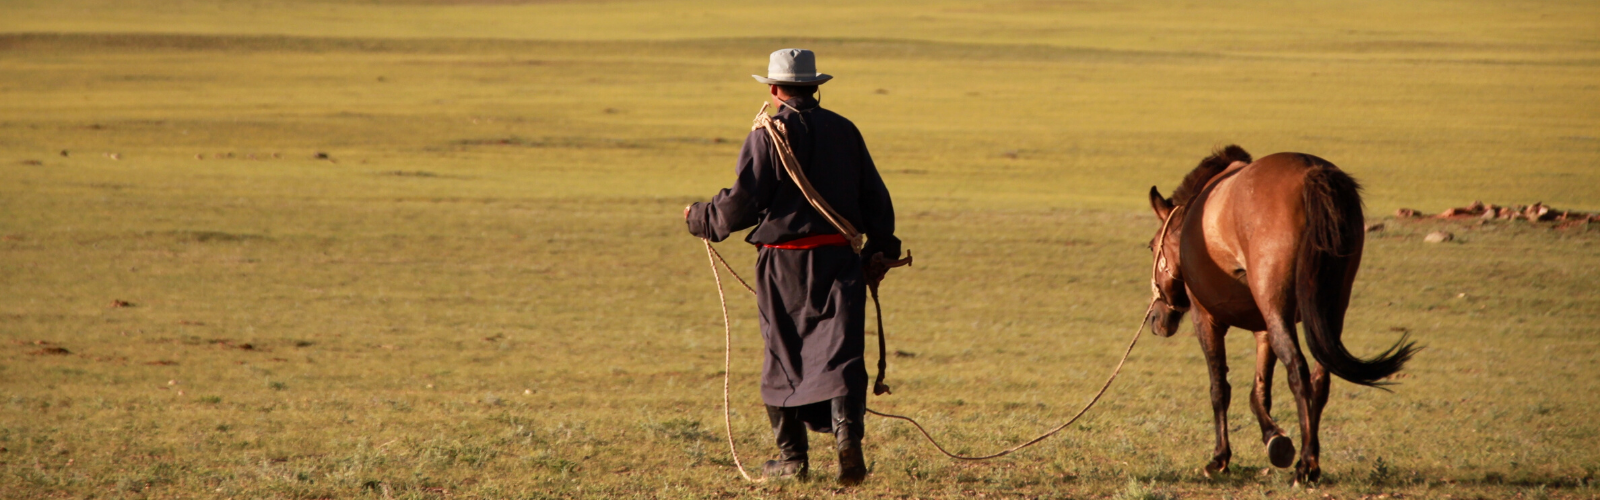 Rencontre avec Munkhe, responsable pays en Mongolie Double Sens